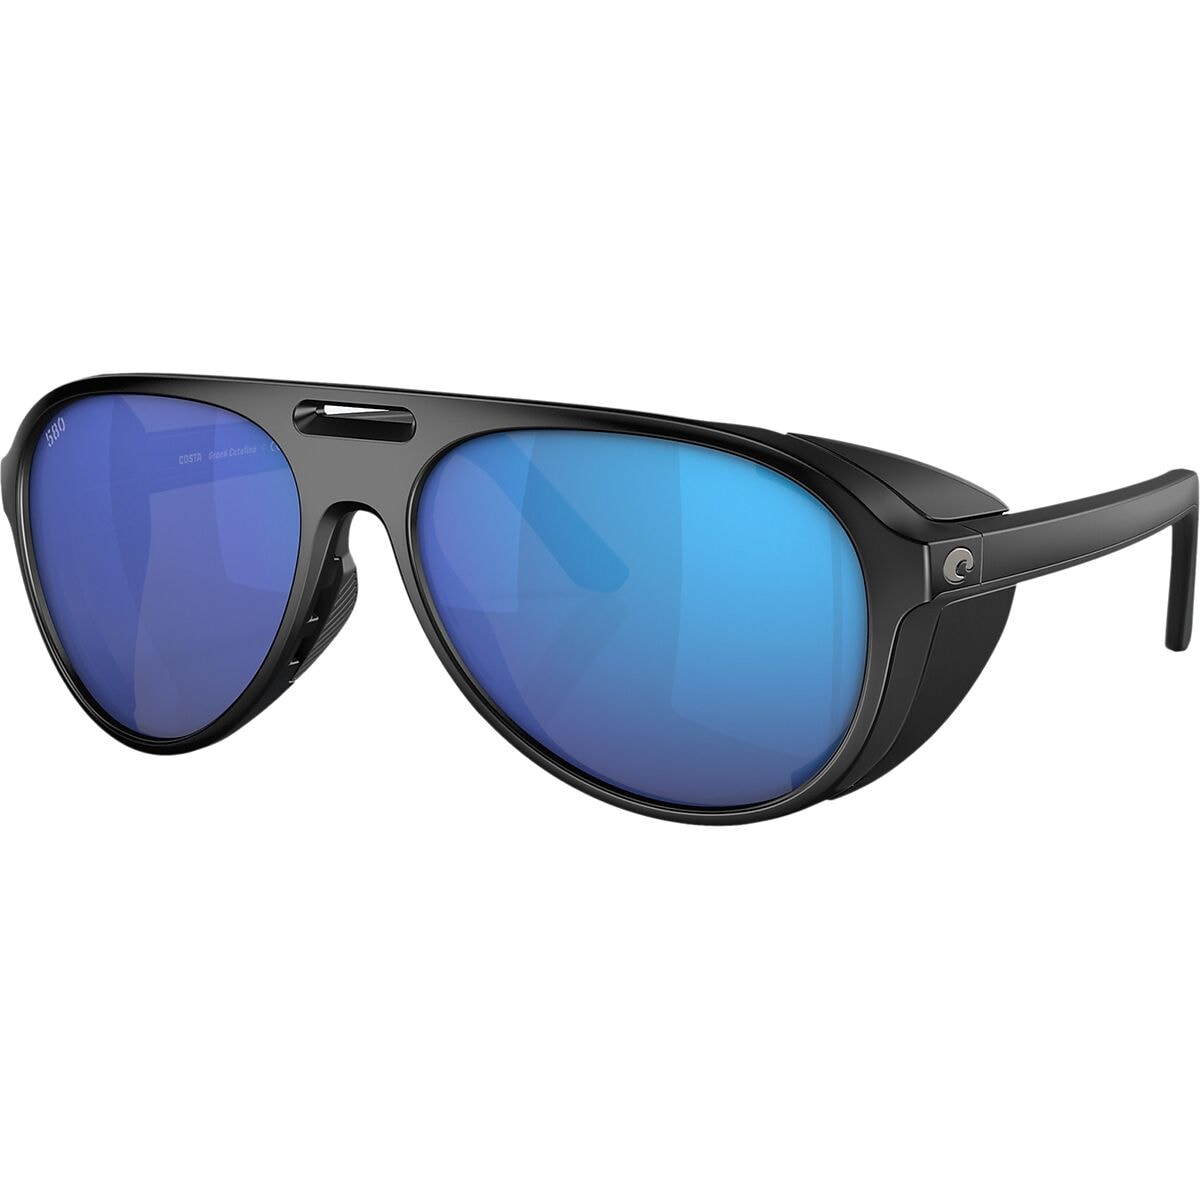 Pre-owned Costa Del Mar Costa Grand Catalina Polarized Sunglasses In Mate Black/blue Mirror 580g